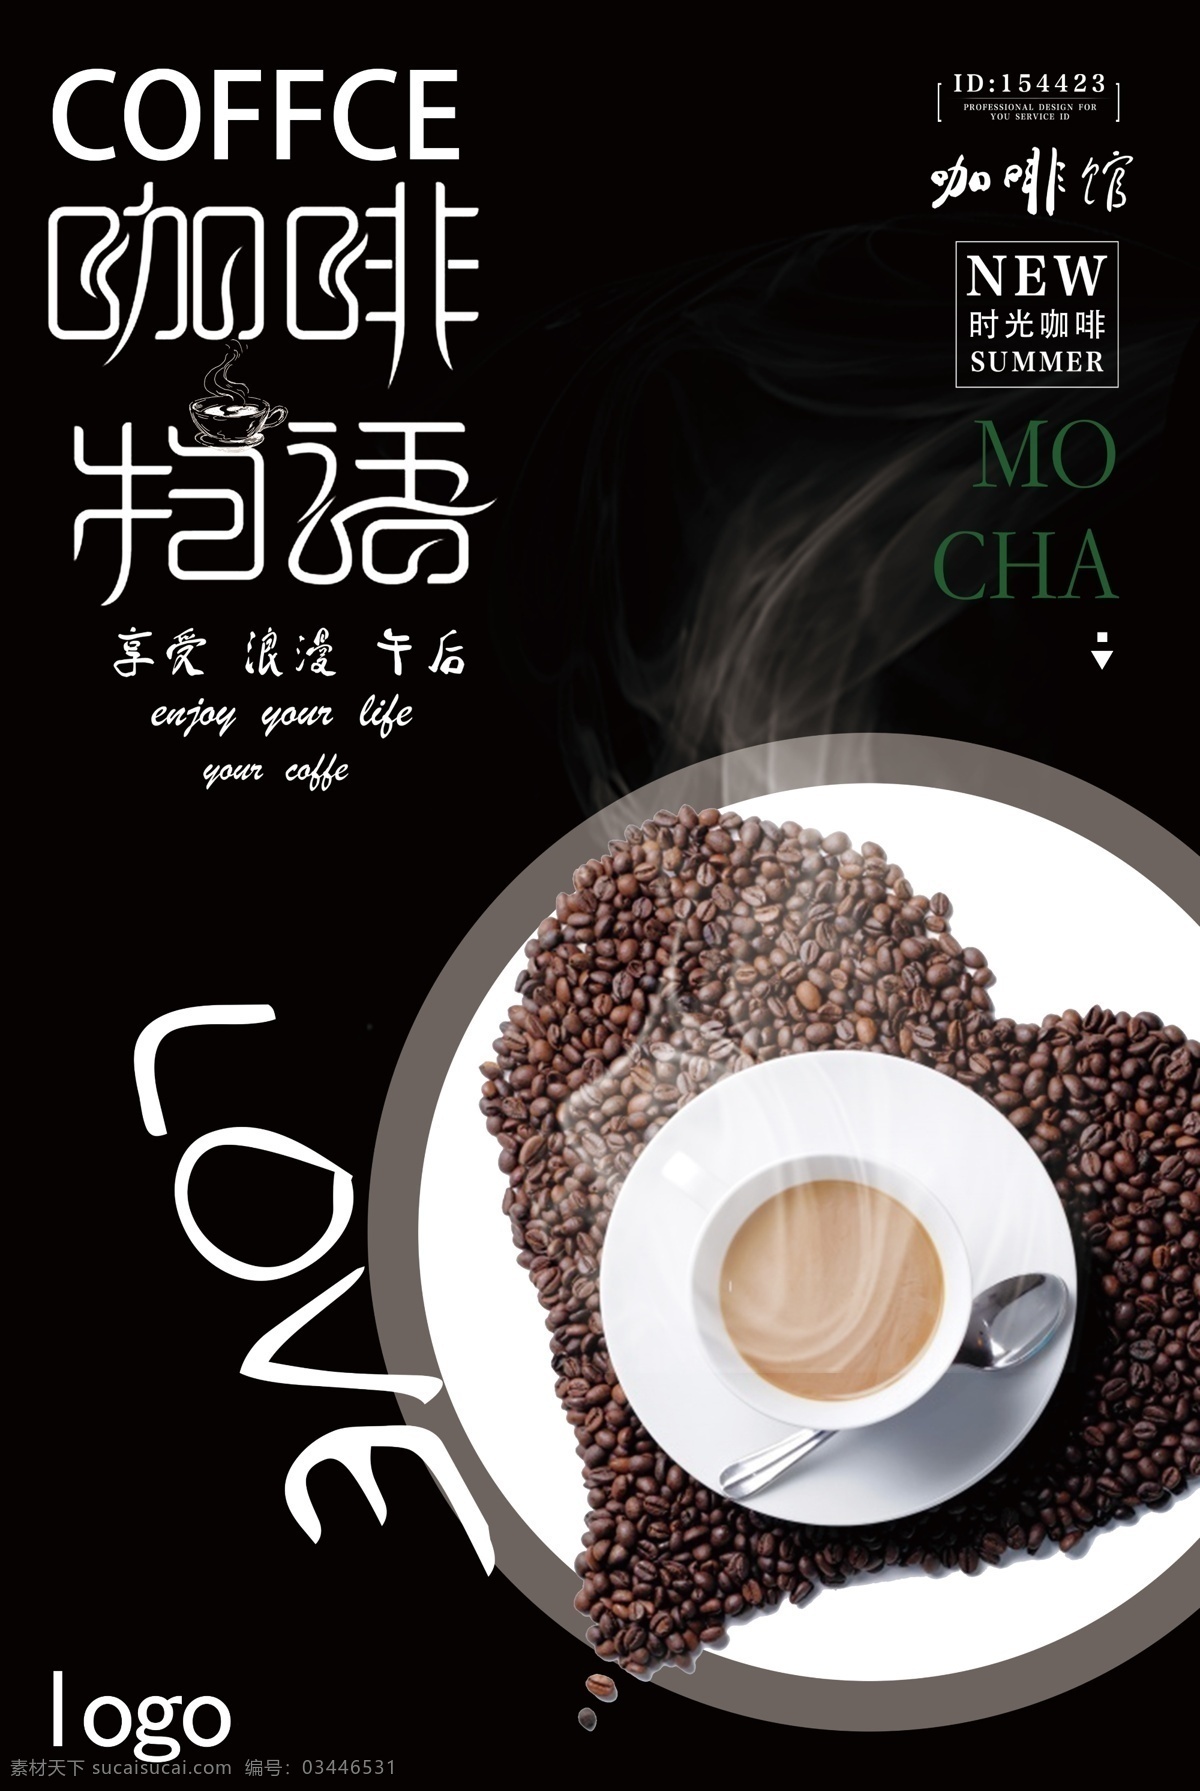 精美 大气 创意 咖啡 美食海报 创意设计 咖啡创意 大气设计